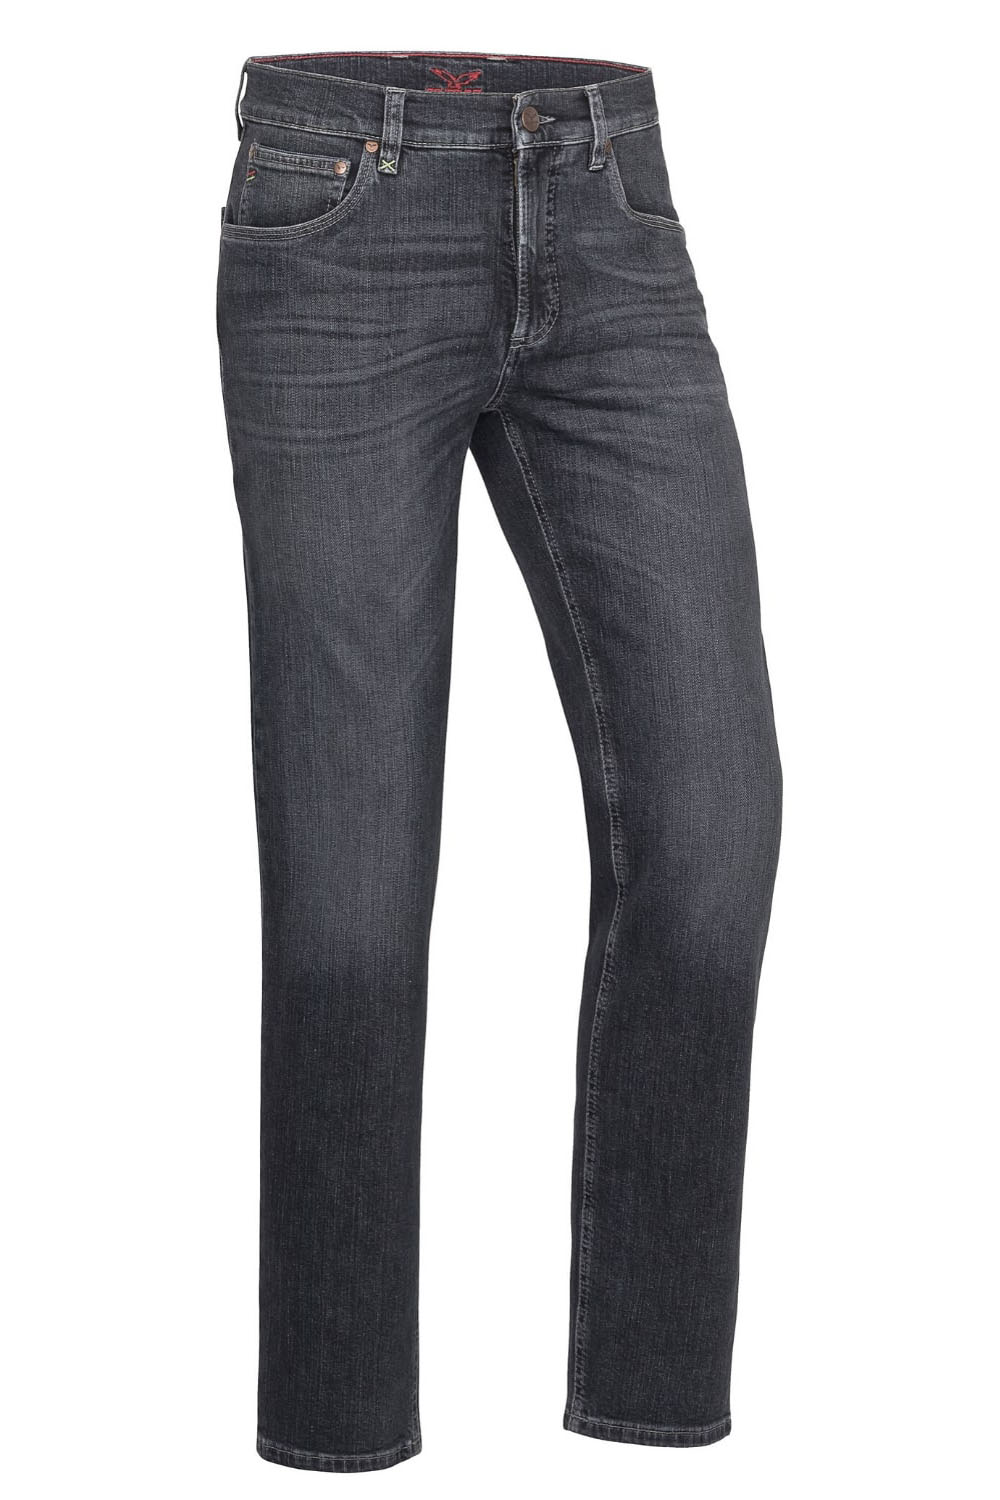 Jeans Finn SlimFit L 34 fashion black